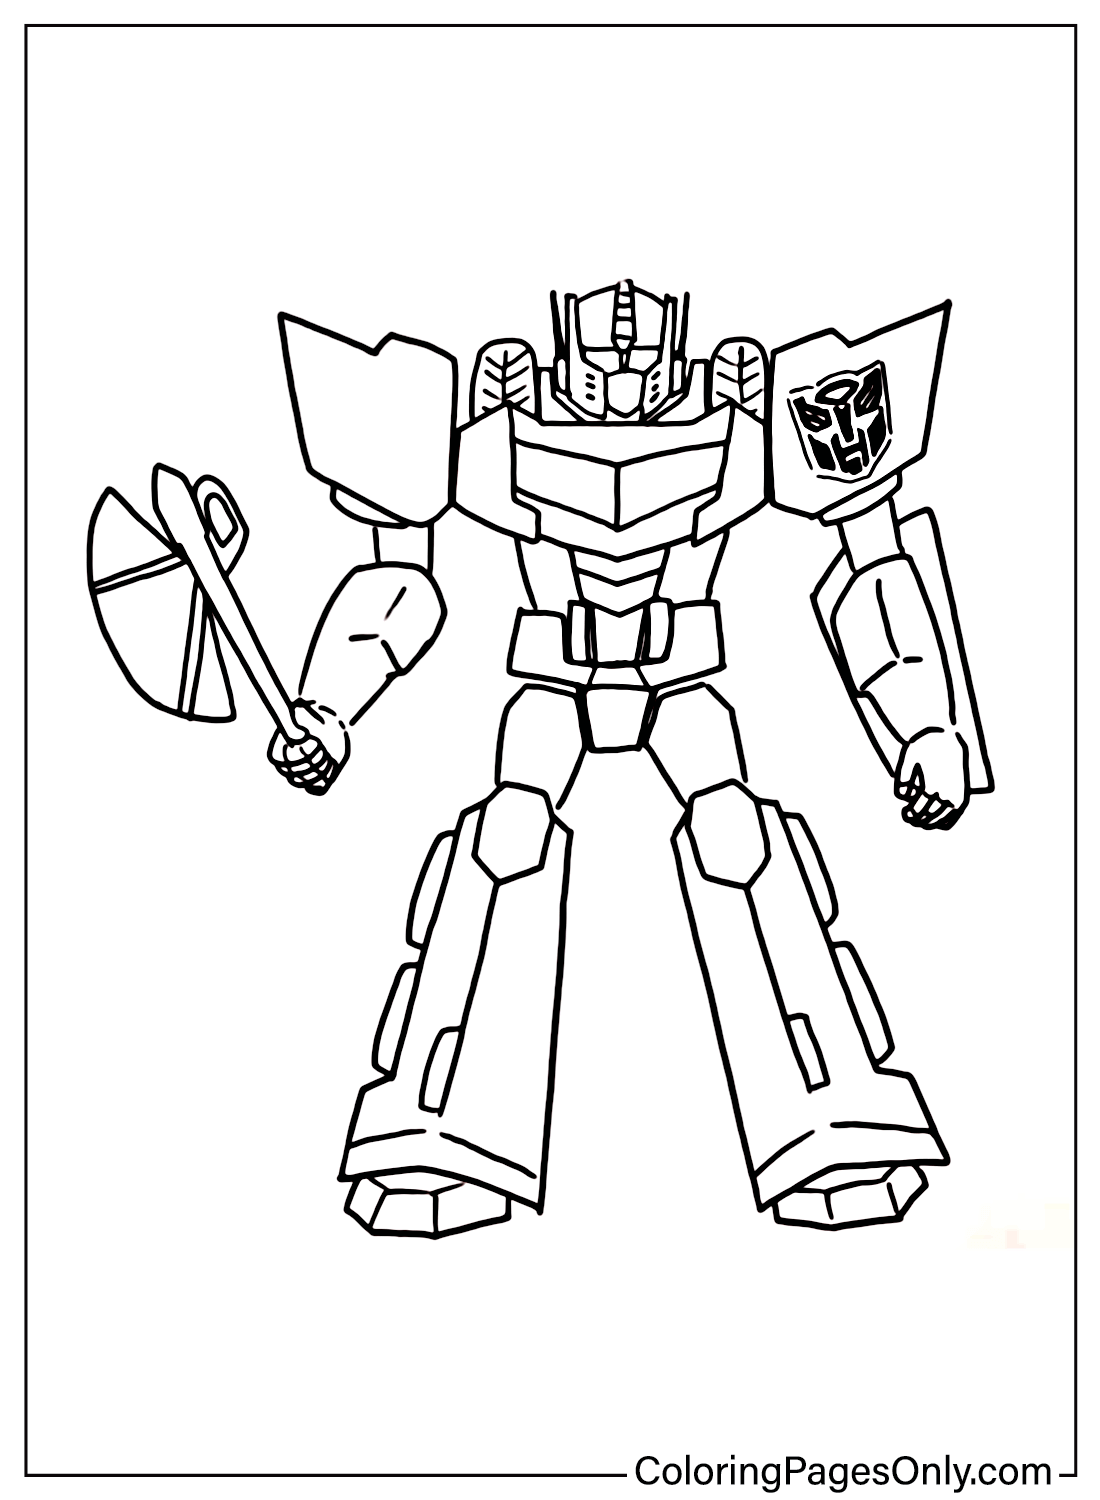 Disegni da colorare Optimus Prime gratuiti da Transformers: L'ultimo cavaliere